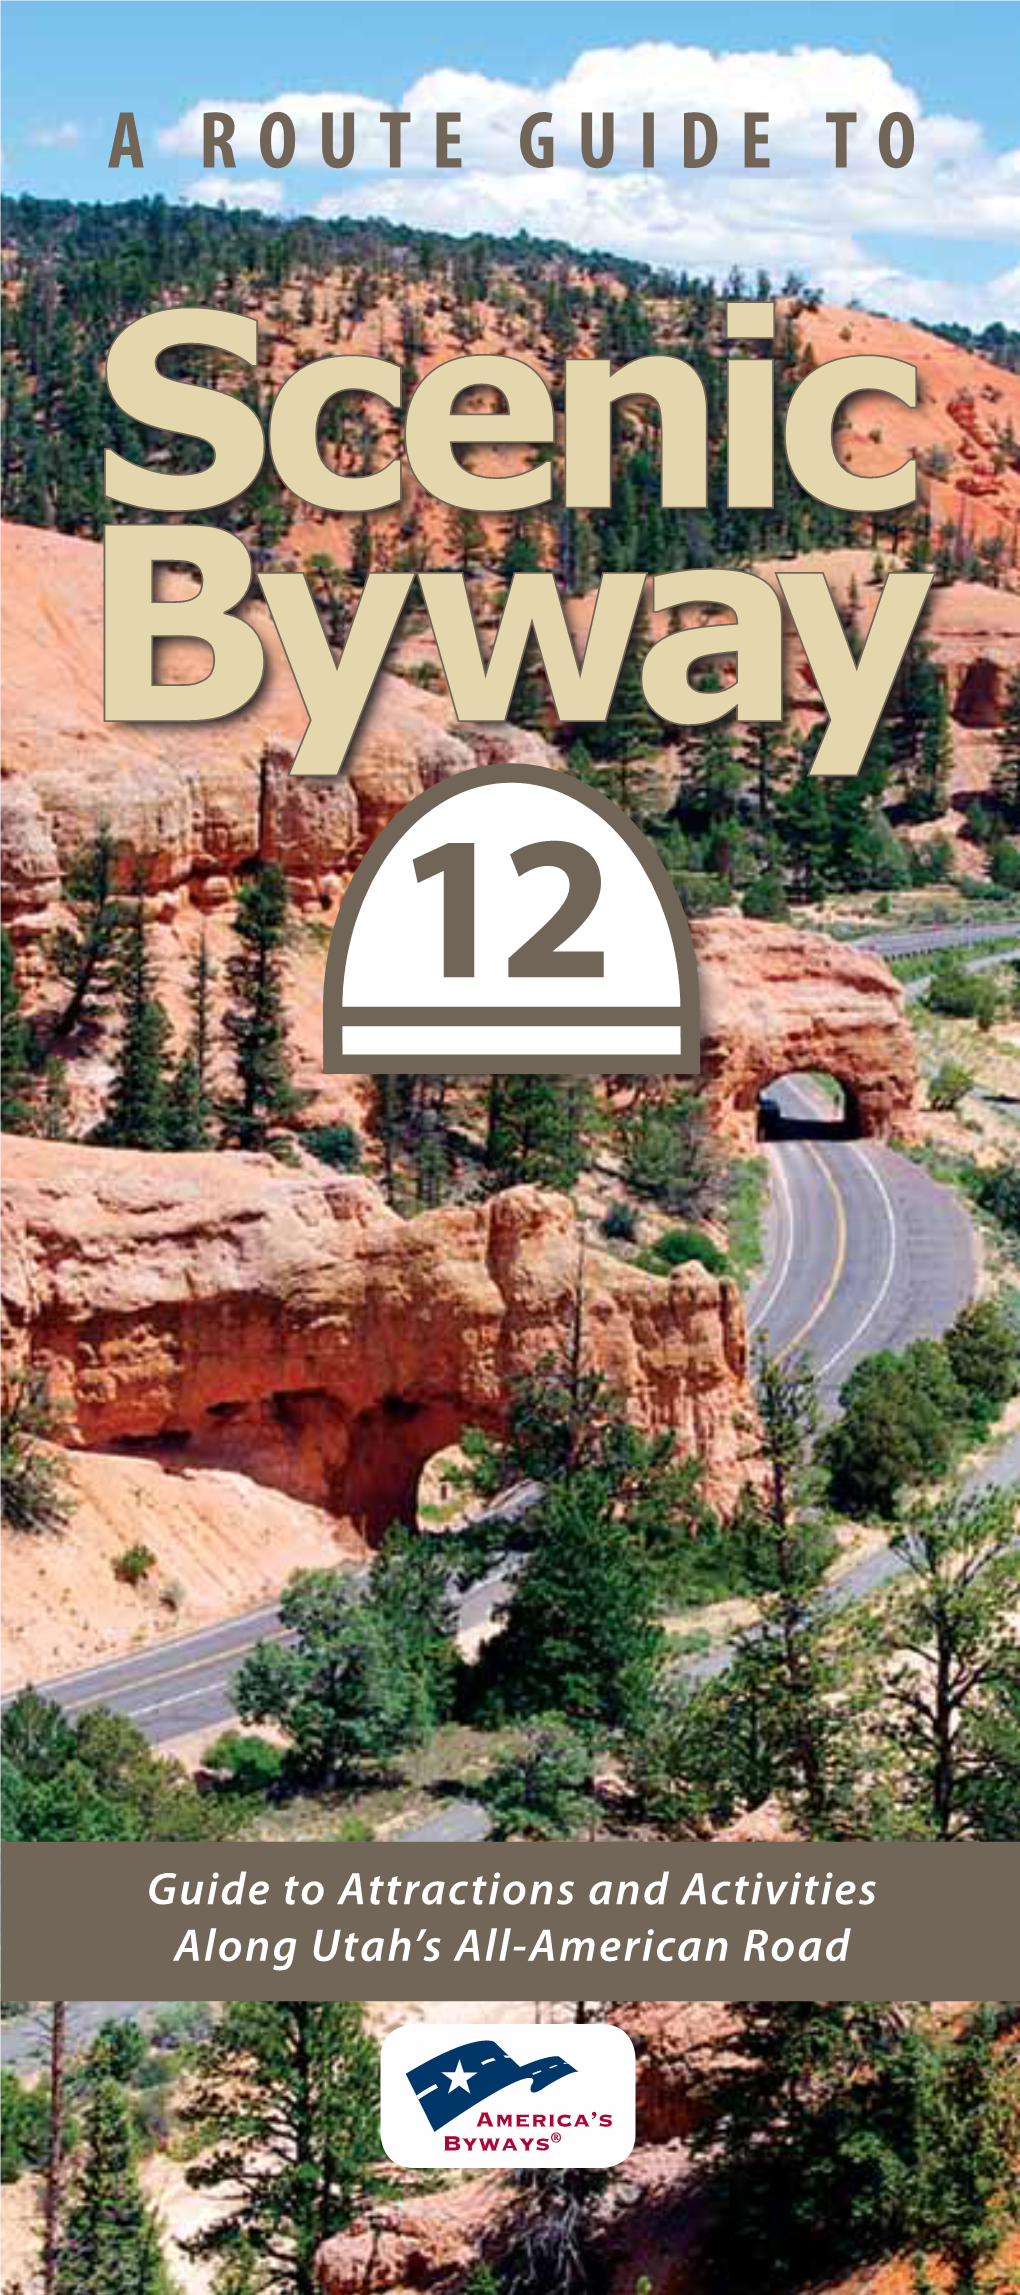 Highway 12 Scenic Byway Brochure